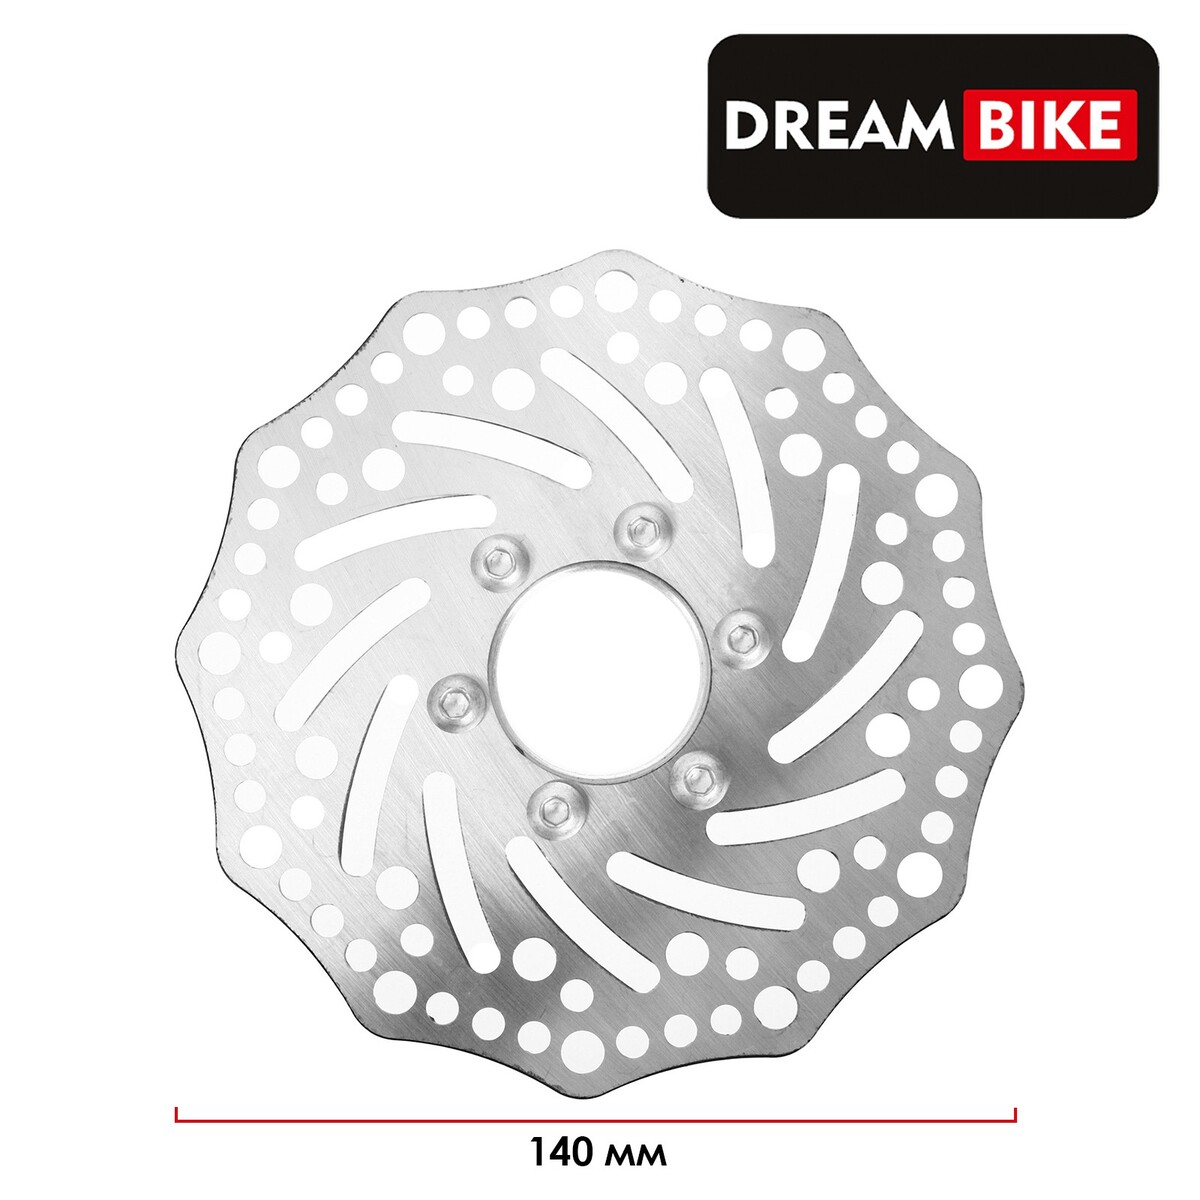 Тормозной диск dream bike, 140 мм, c адаптером противоугонный замок на тормозной диск с звуковой сигнализацией 110 дб